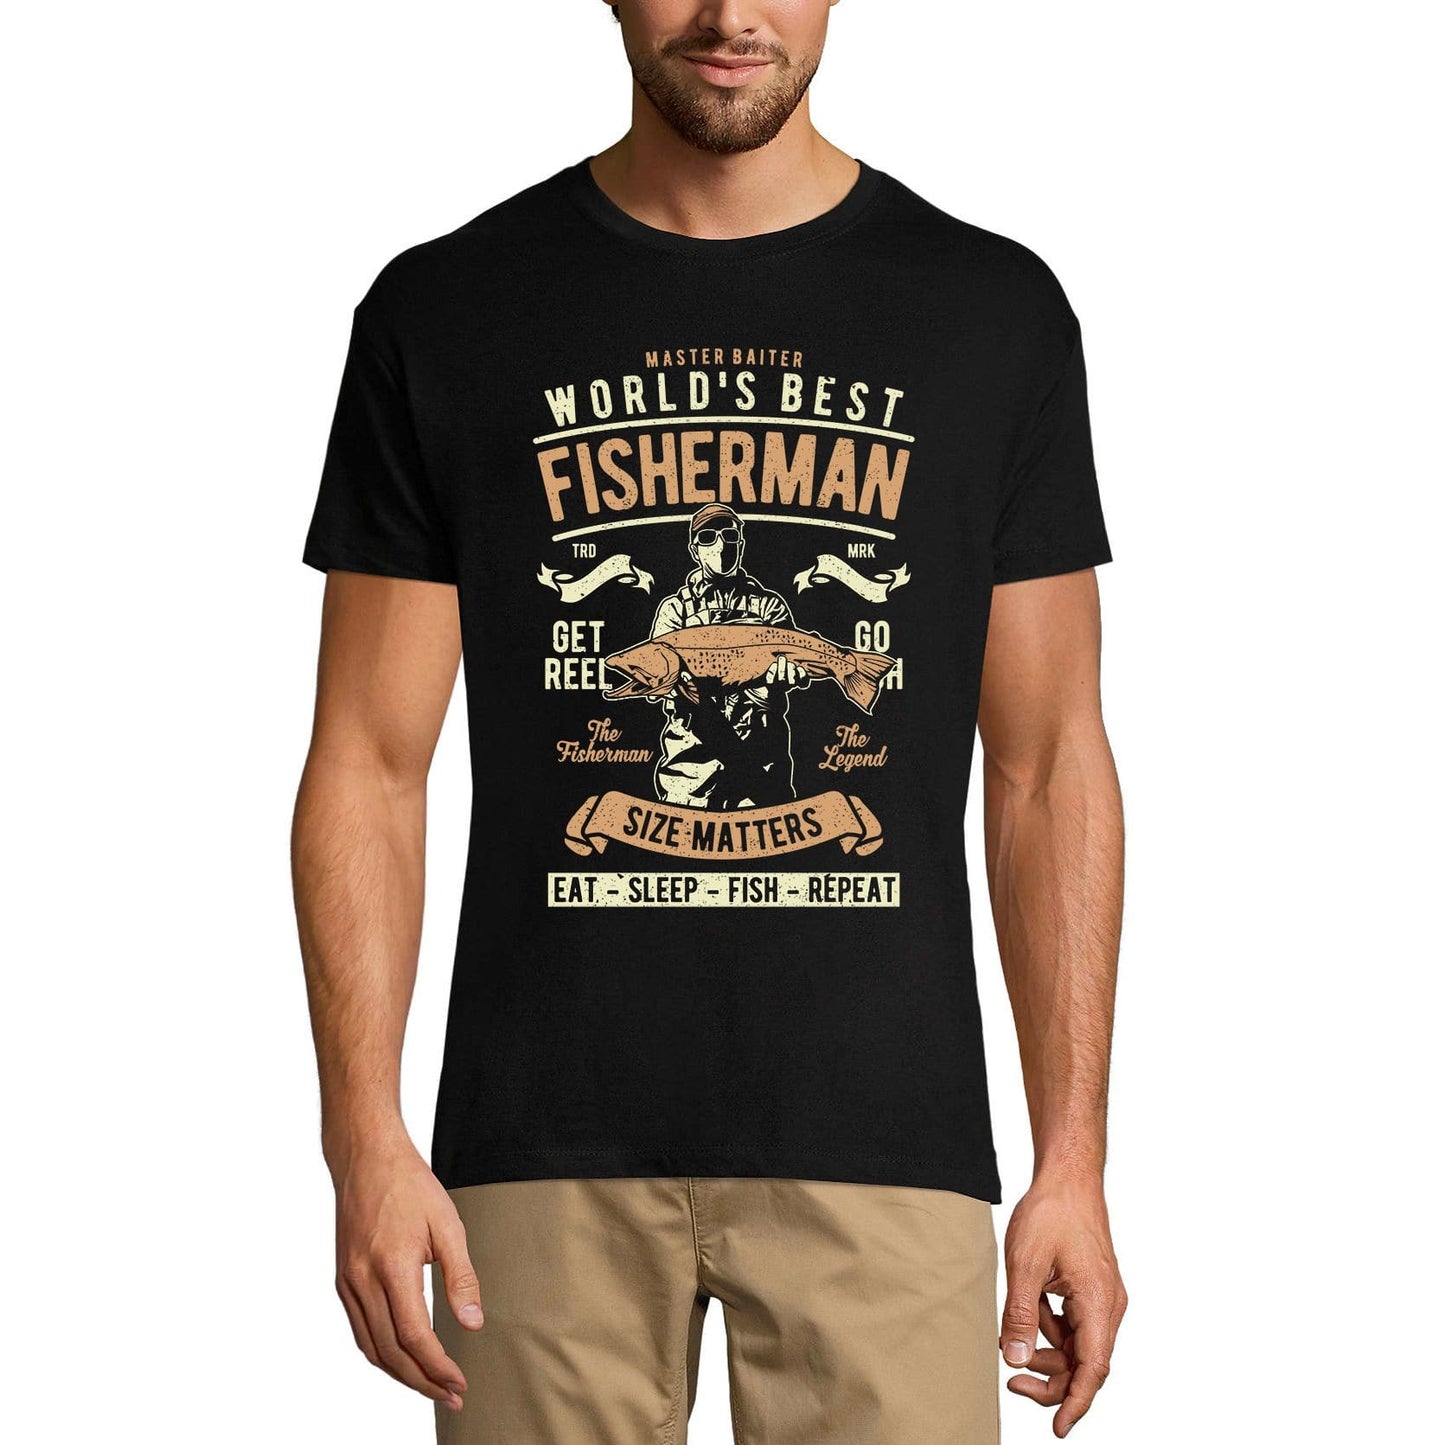 ULTRABASIC Men's T-Shirt Master Baiter - World's Best Fisherman - Size Matter Funny Tee Shirt